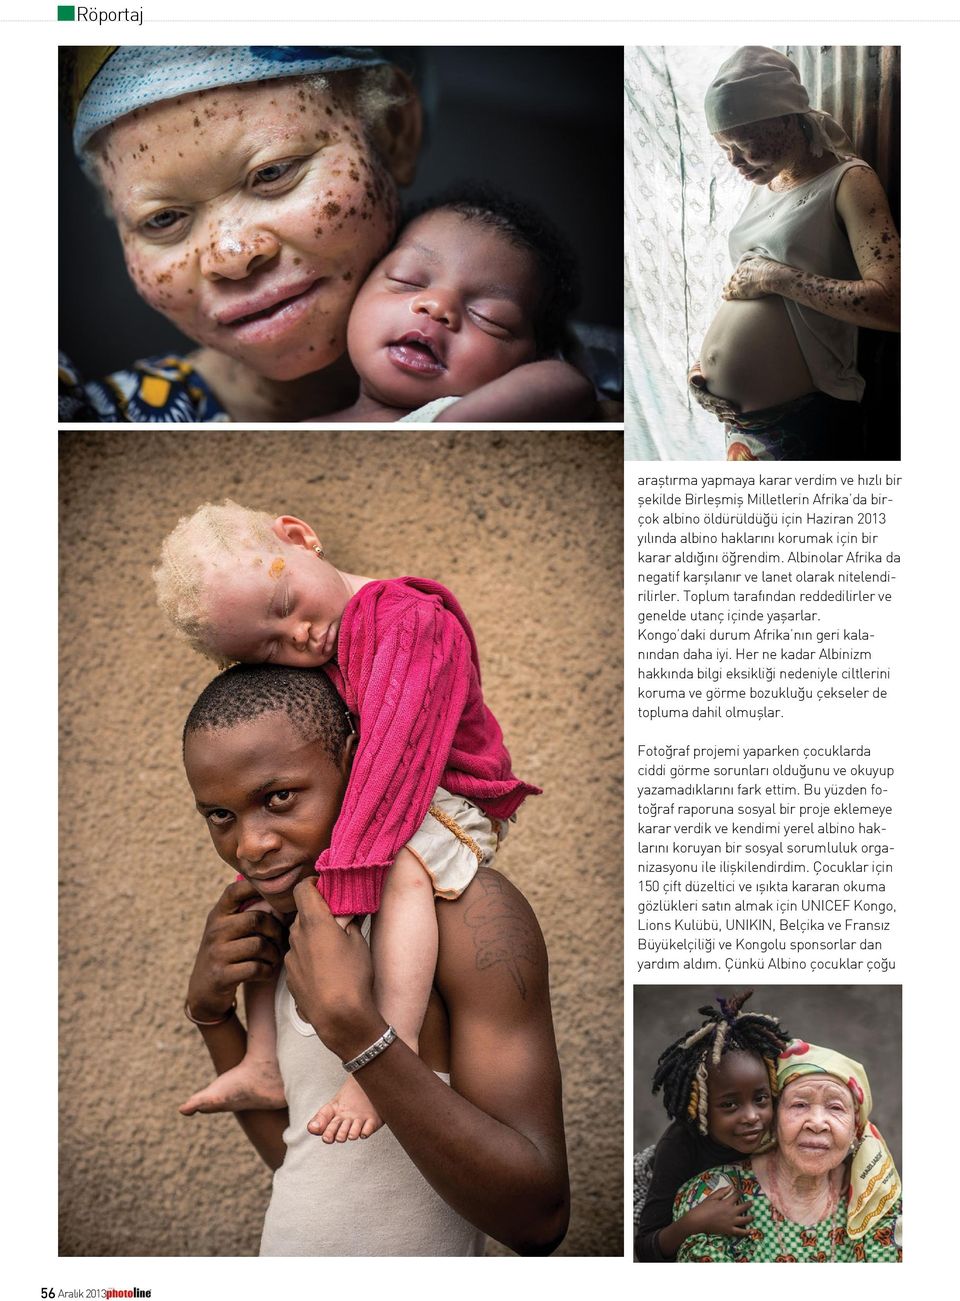 Kongo daki durum Afrika nın geri kalanından daha iyi. Her ne kadar Albinizm hakkında bilgi eksikliği nedeniyle ciltlerini koruma ve görme bozukluğu çekseler de topluma dahil olmuşlar.